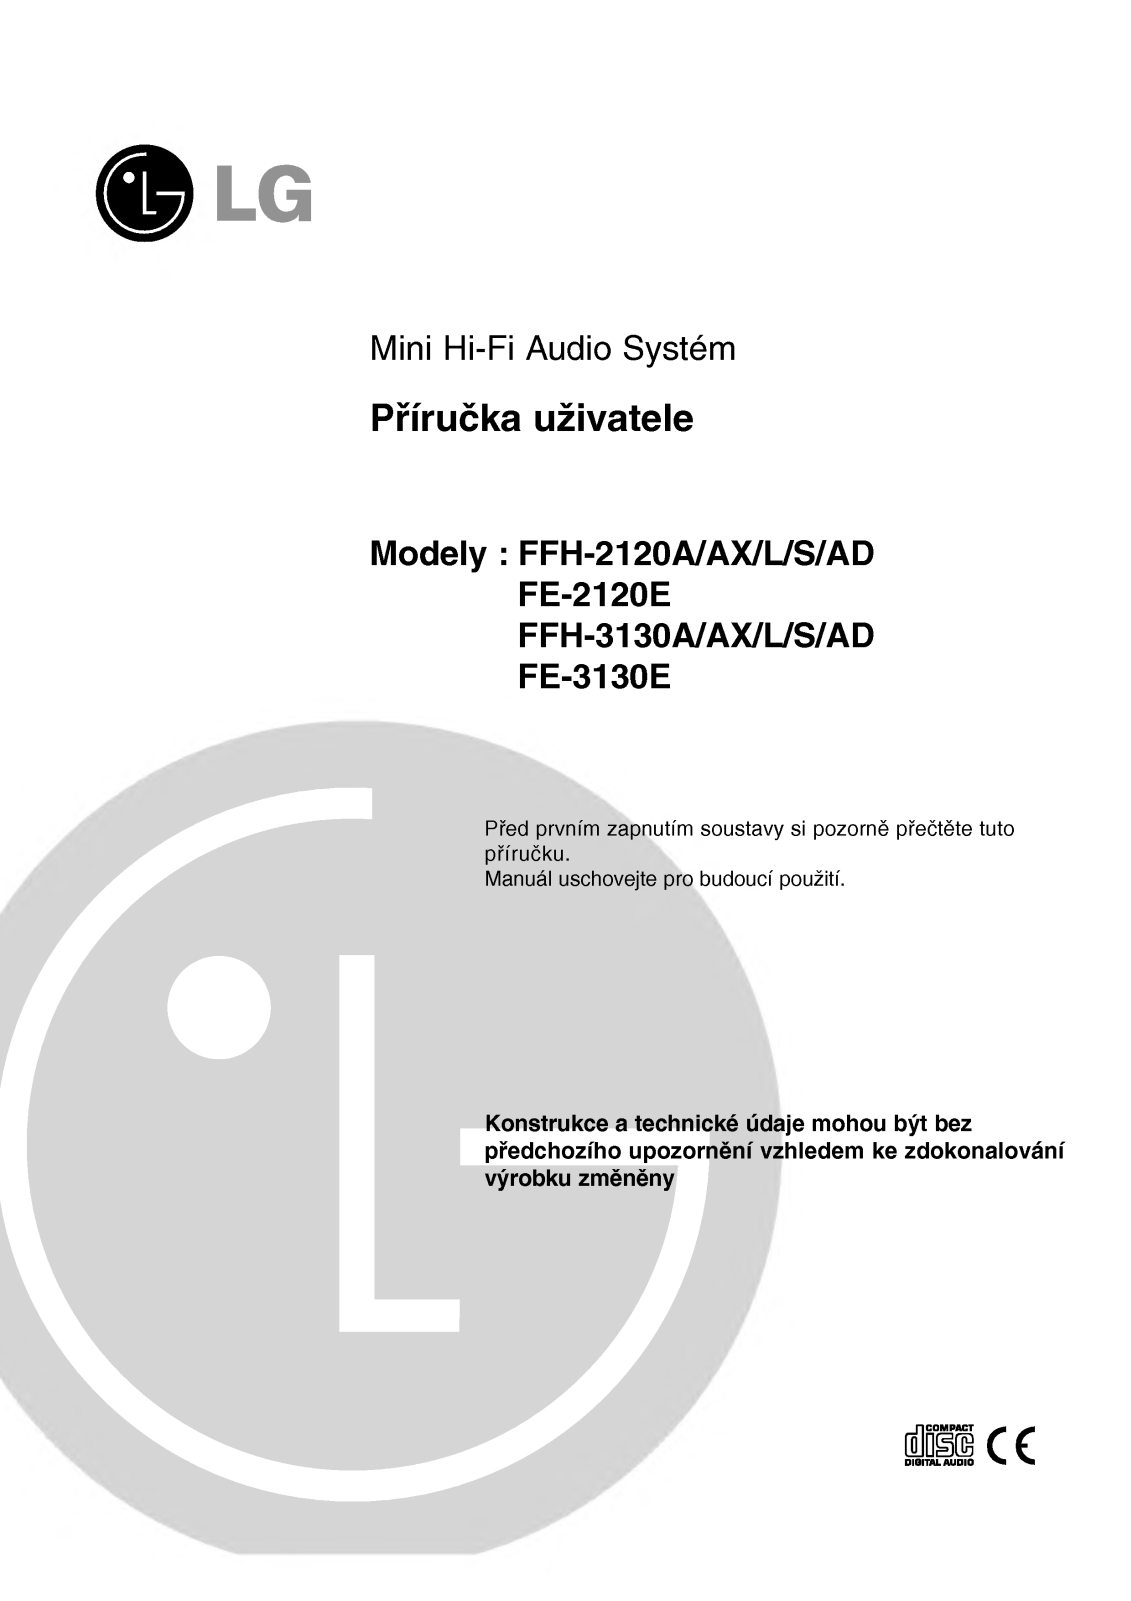 Lg FFH-2120A, FFH-2120AX, FFH-2120L, FFH-2120S, FFH-2120AD User Manual